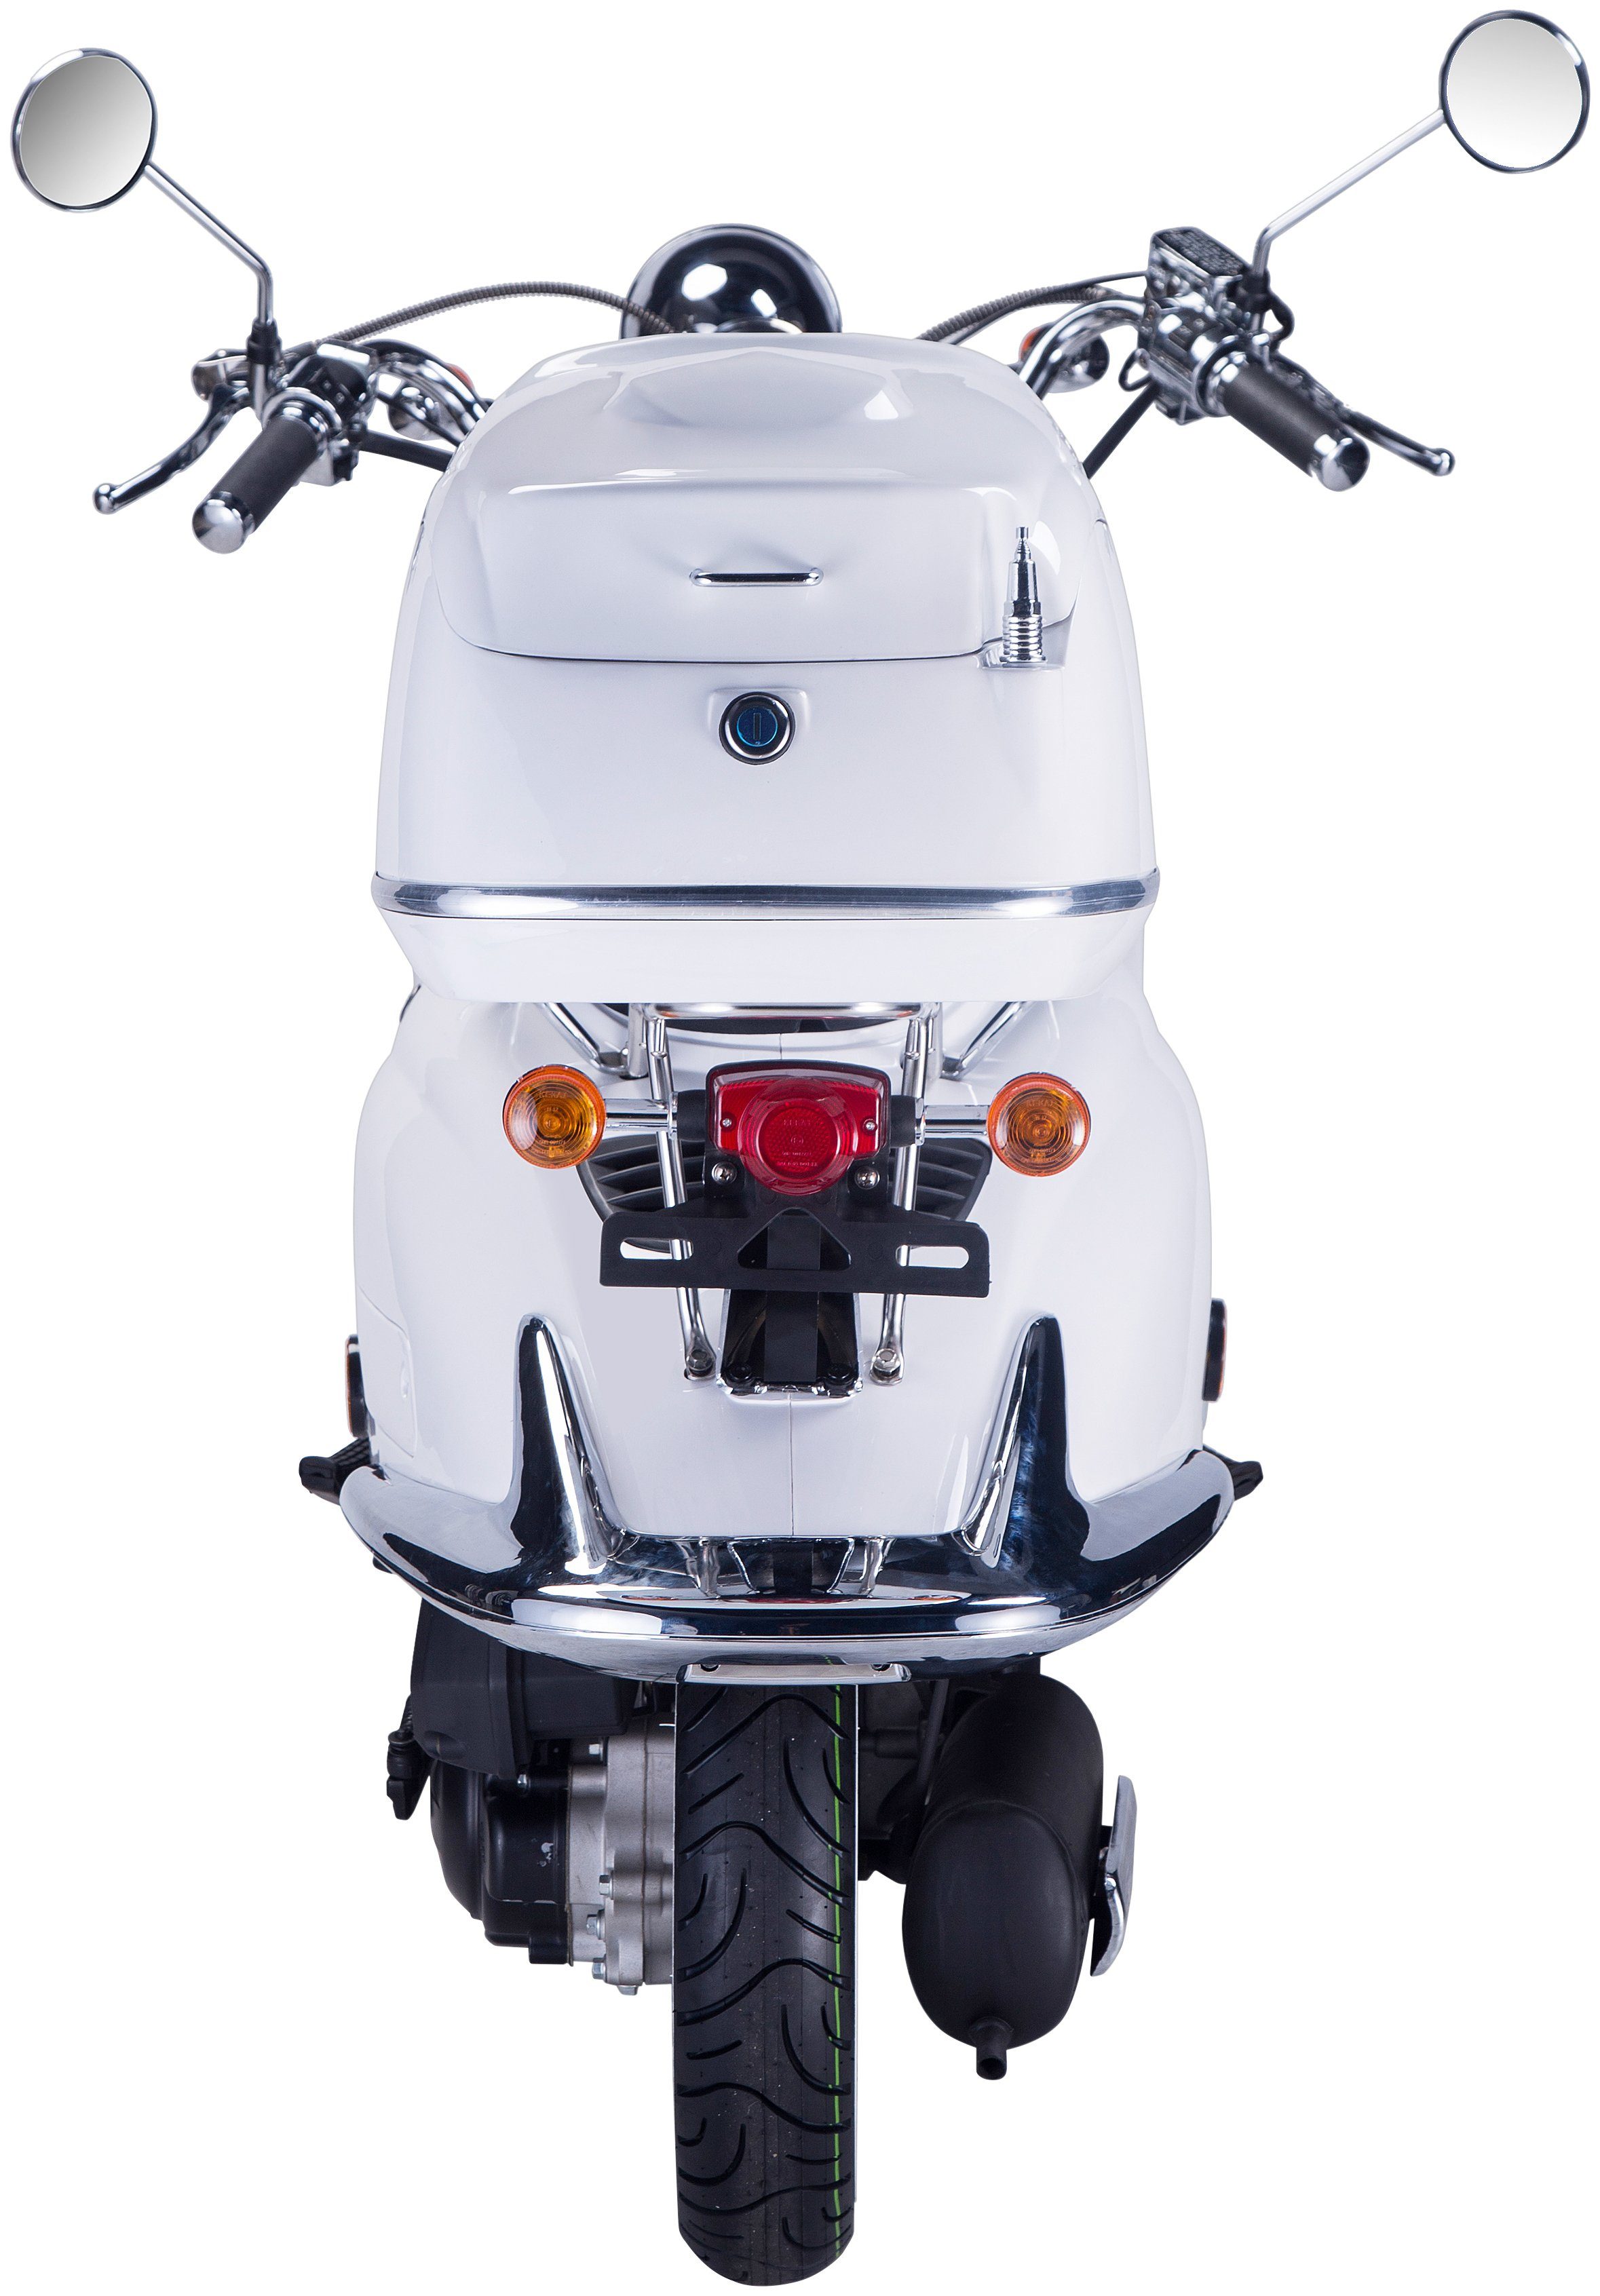 ccm, Motorroller weiß mit 85 GT Topcase (Set), 125 5, Strada, km/h, Euro UNION